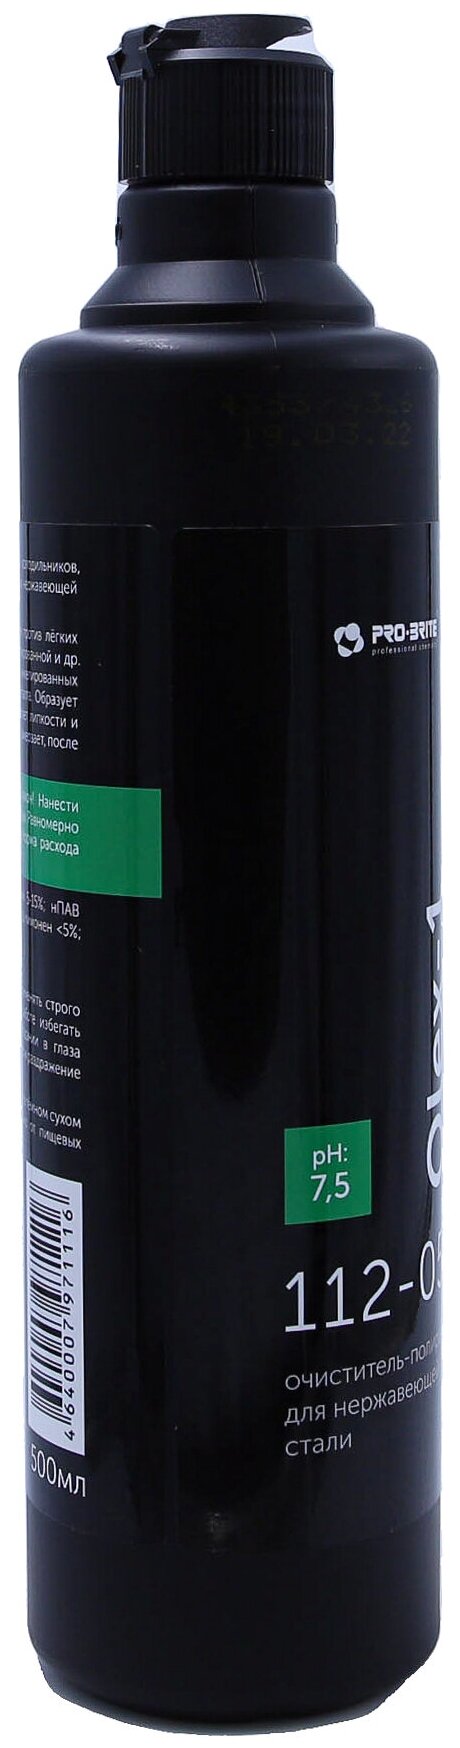 Очиститель-полироль для нержавеющей стали OLEX-1 0,5 л, средство против загрязнений и отпечатков пальцев, 5 шт. - фотография № 11